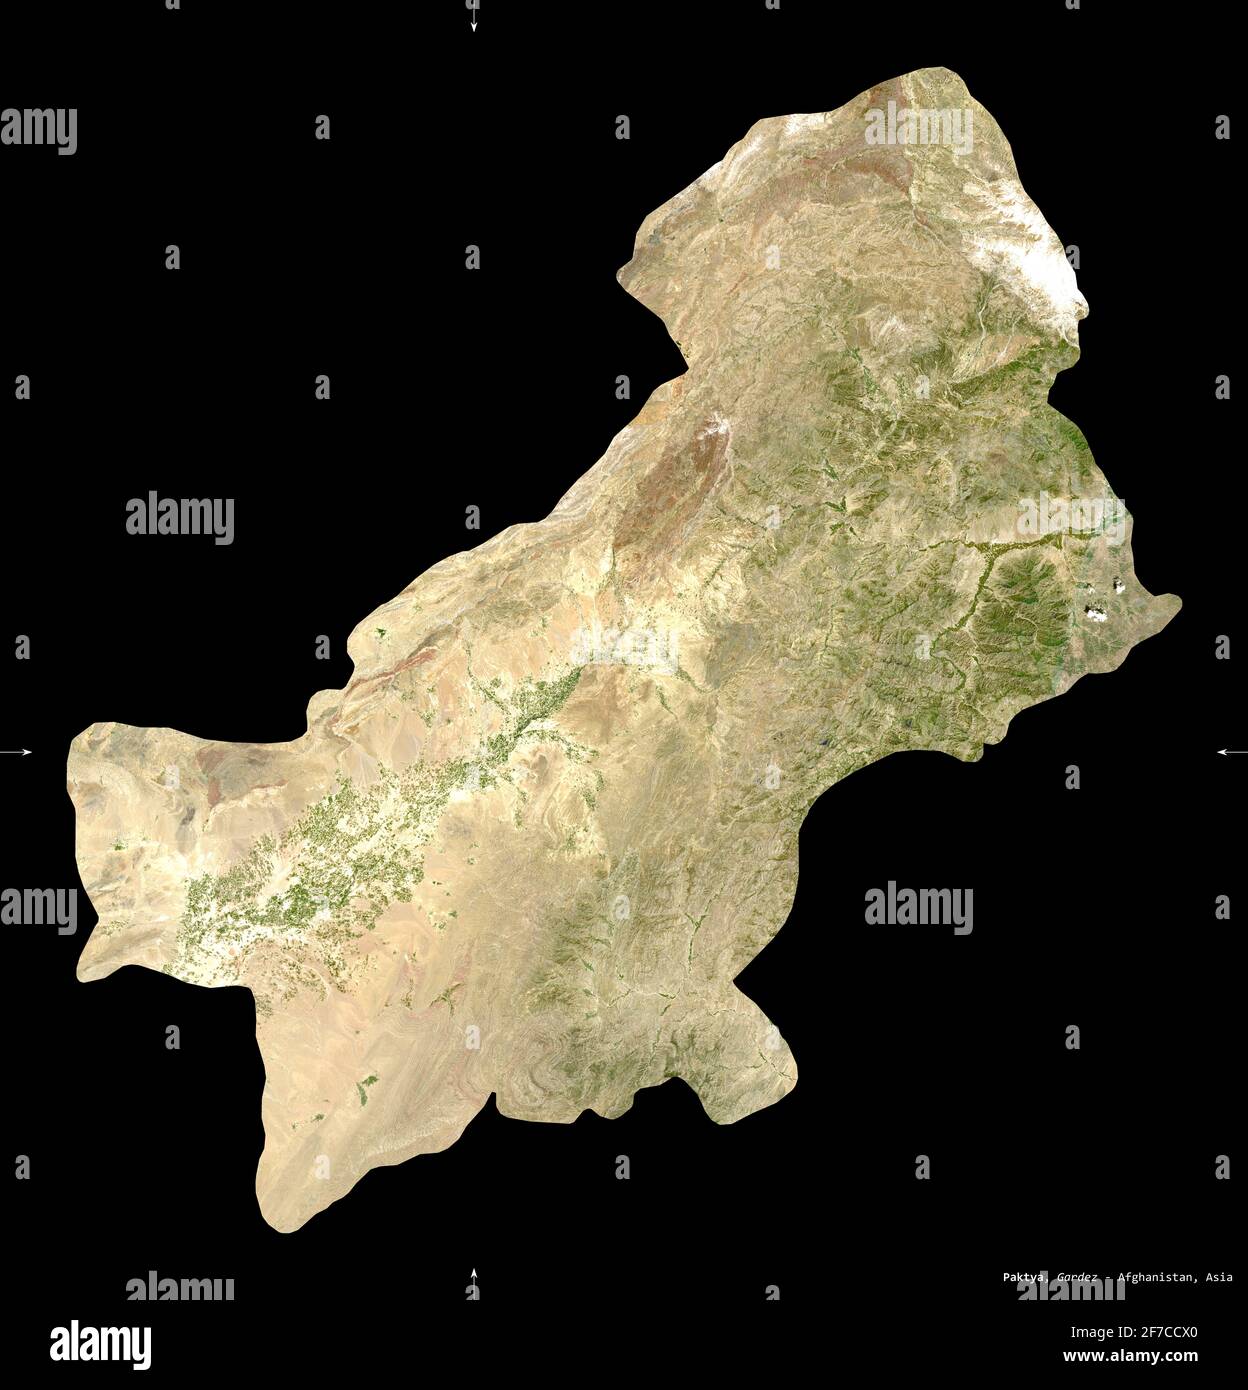 Paktya, provincia dell'Afghanistan. Immagini satellitari Sentinel-2. Forma isolata su nero. Descrizione, ubicazione della capitale. Contiene Copern modificato Foto Stock